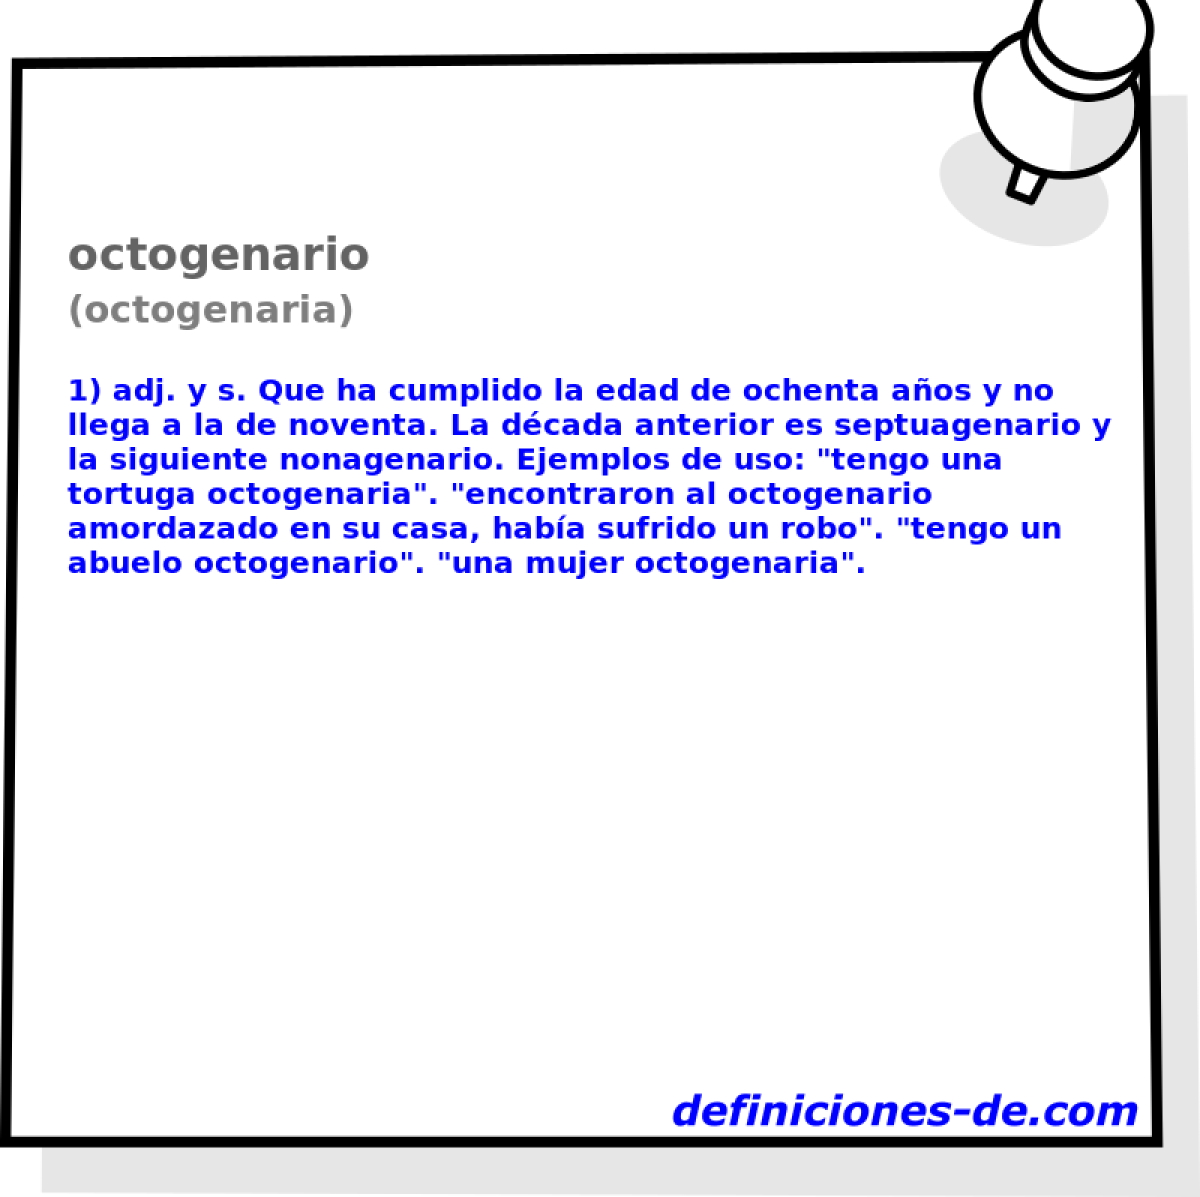 octogenario (octogenaria)